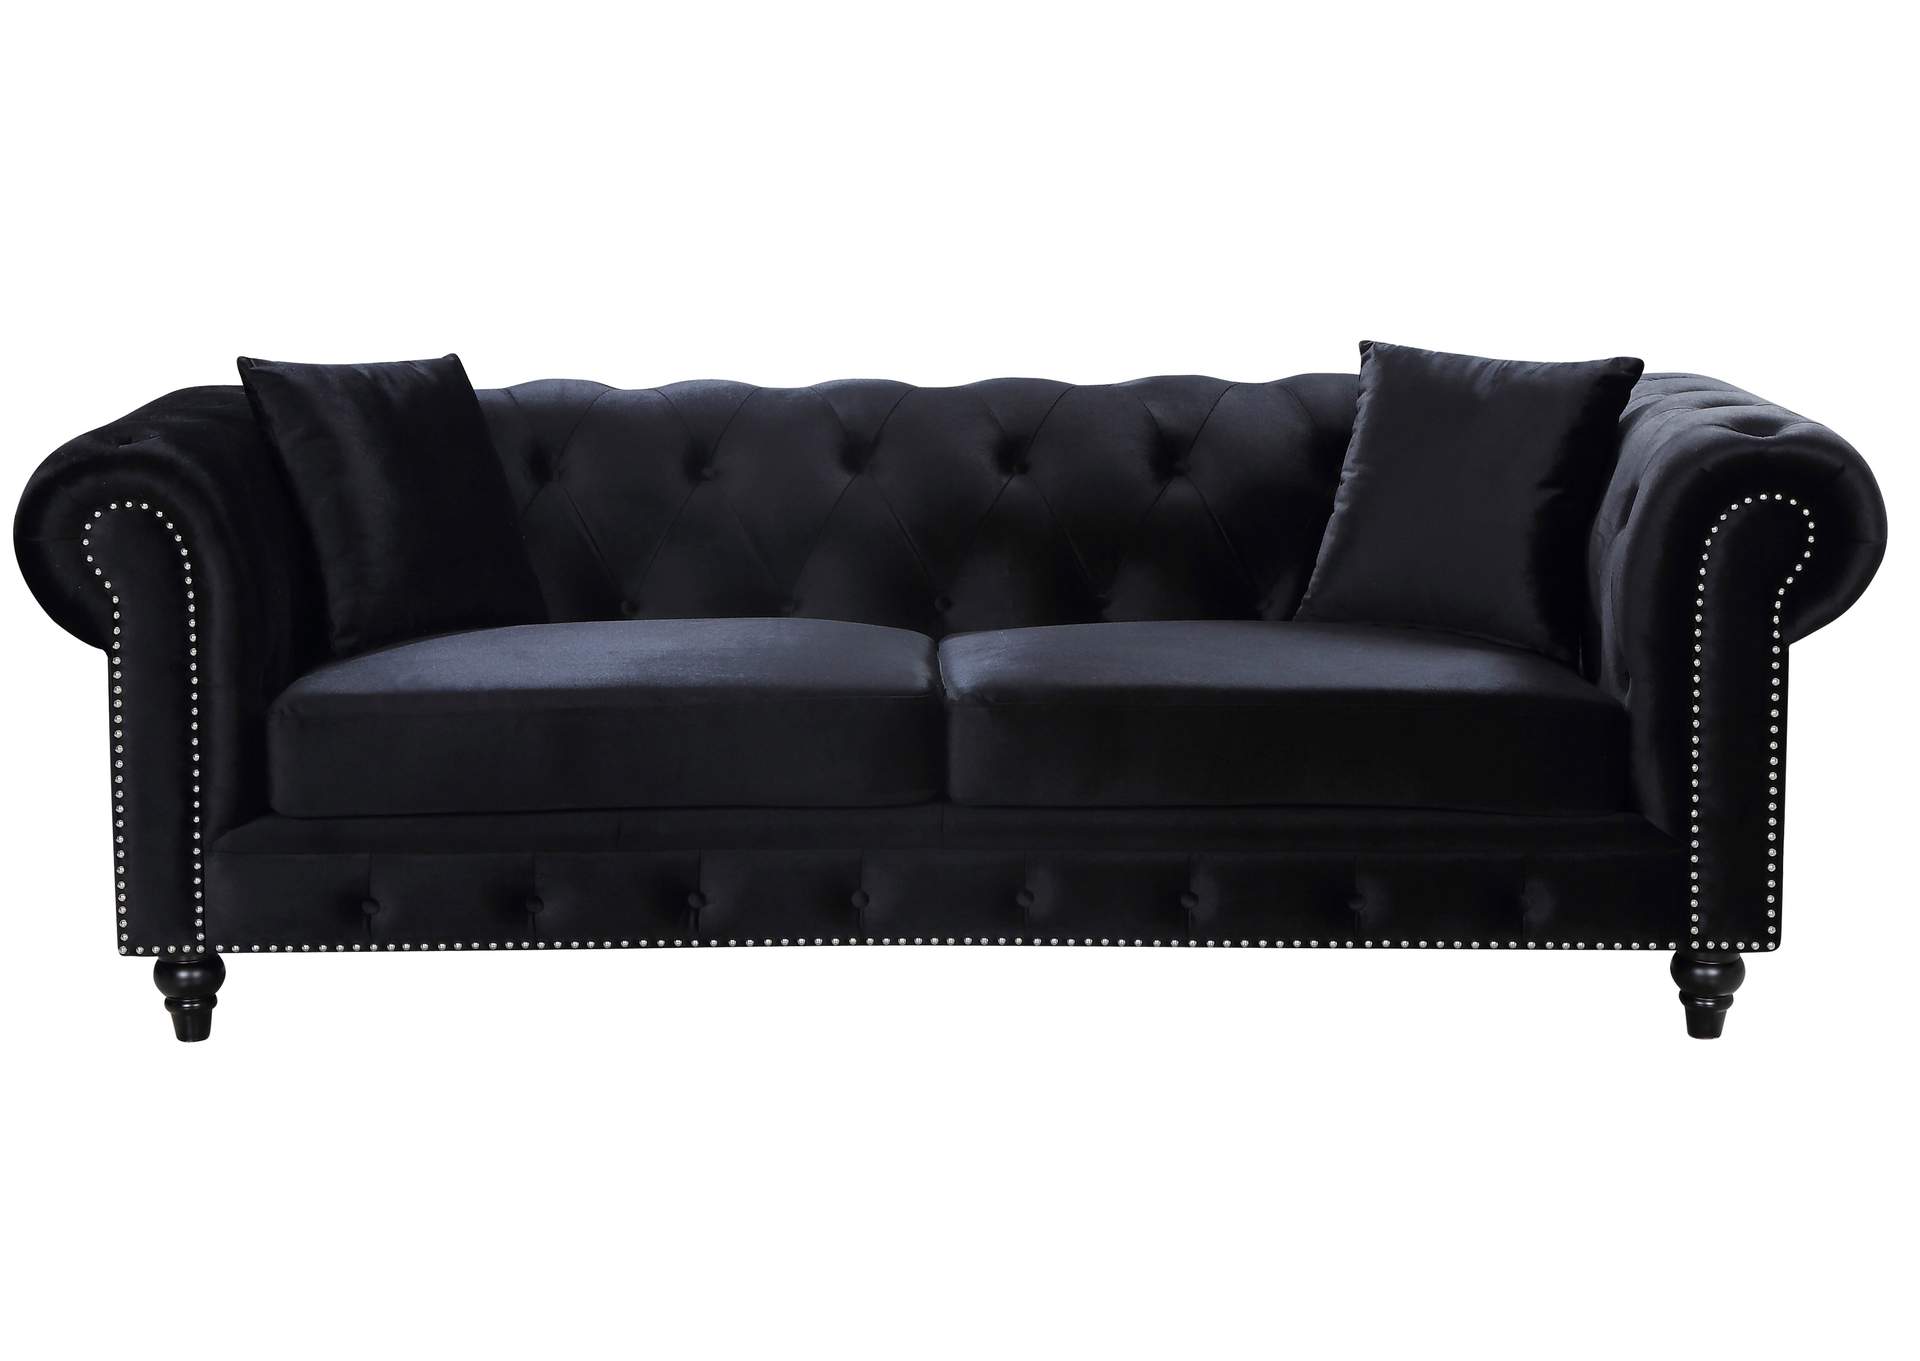 Chesterfield Black Velvet Sofa Best Buy Furniture and Mattress